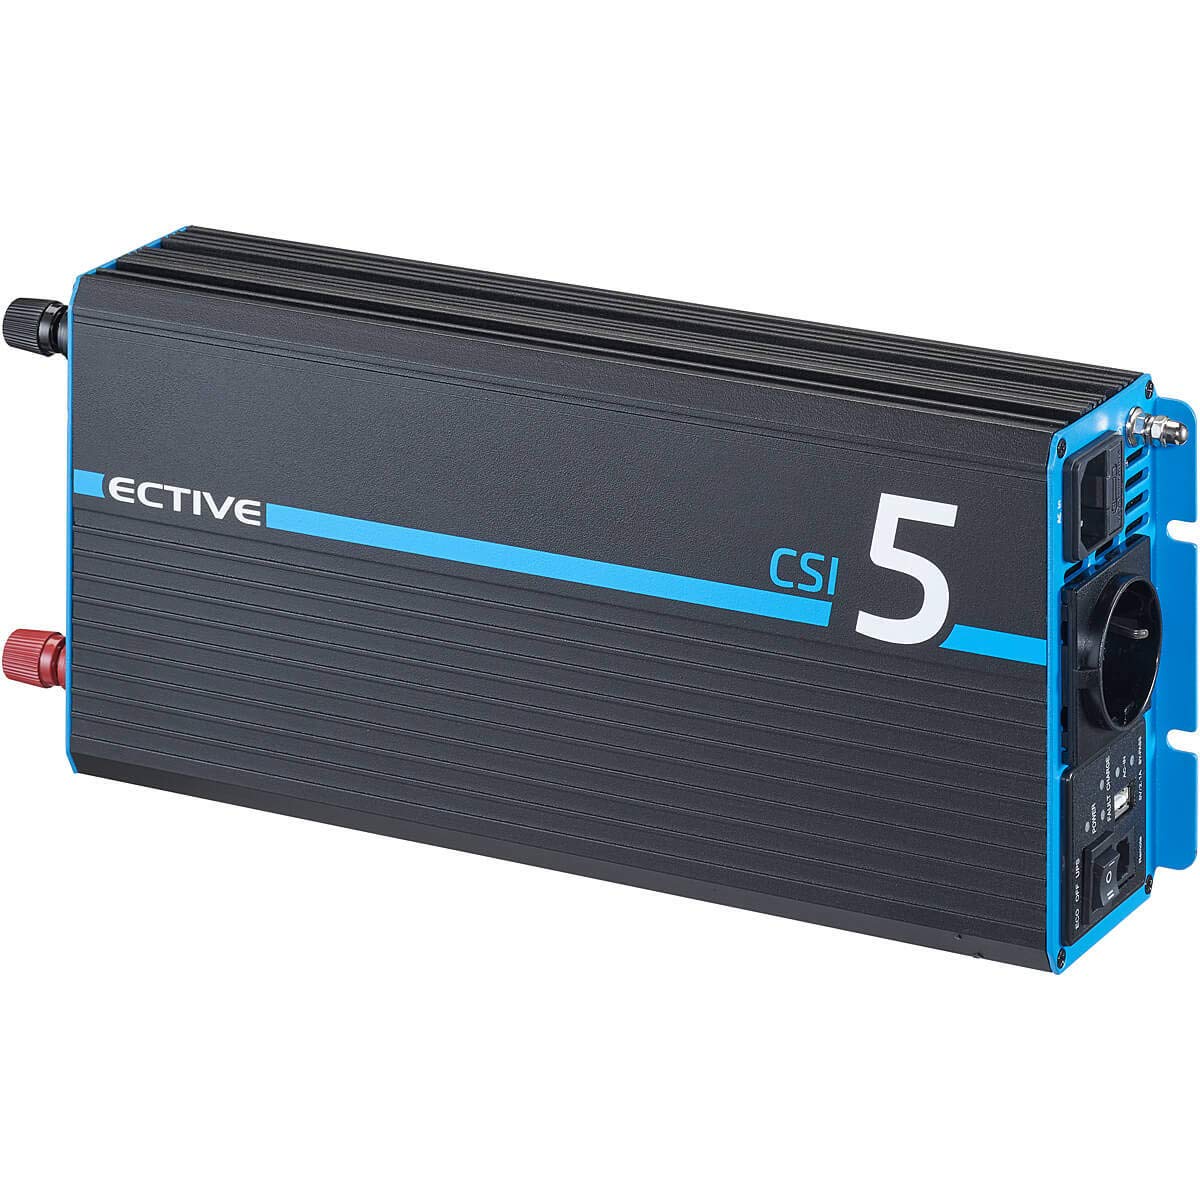 ECTIVE Reiner Sinsus Wechselrichter CSI 5-500W, 12V auf 230V, USB, USV Funktion, Überhitzungsschutz, Netzvorrangschaltung - DC/AC Spannungswandler, Umwandler, Stromwandler für Haushaltsgeräten von ECTIVE